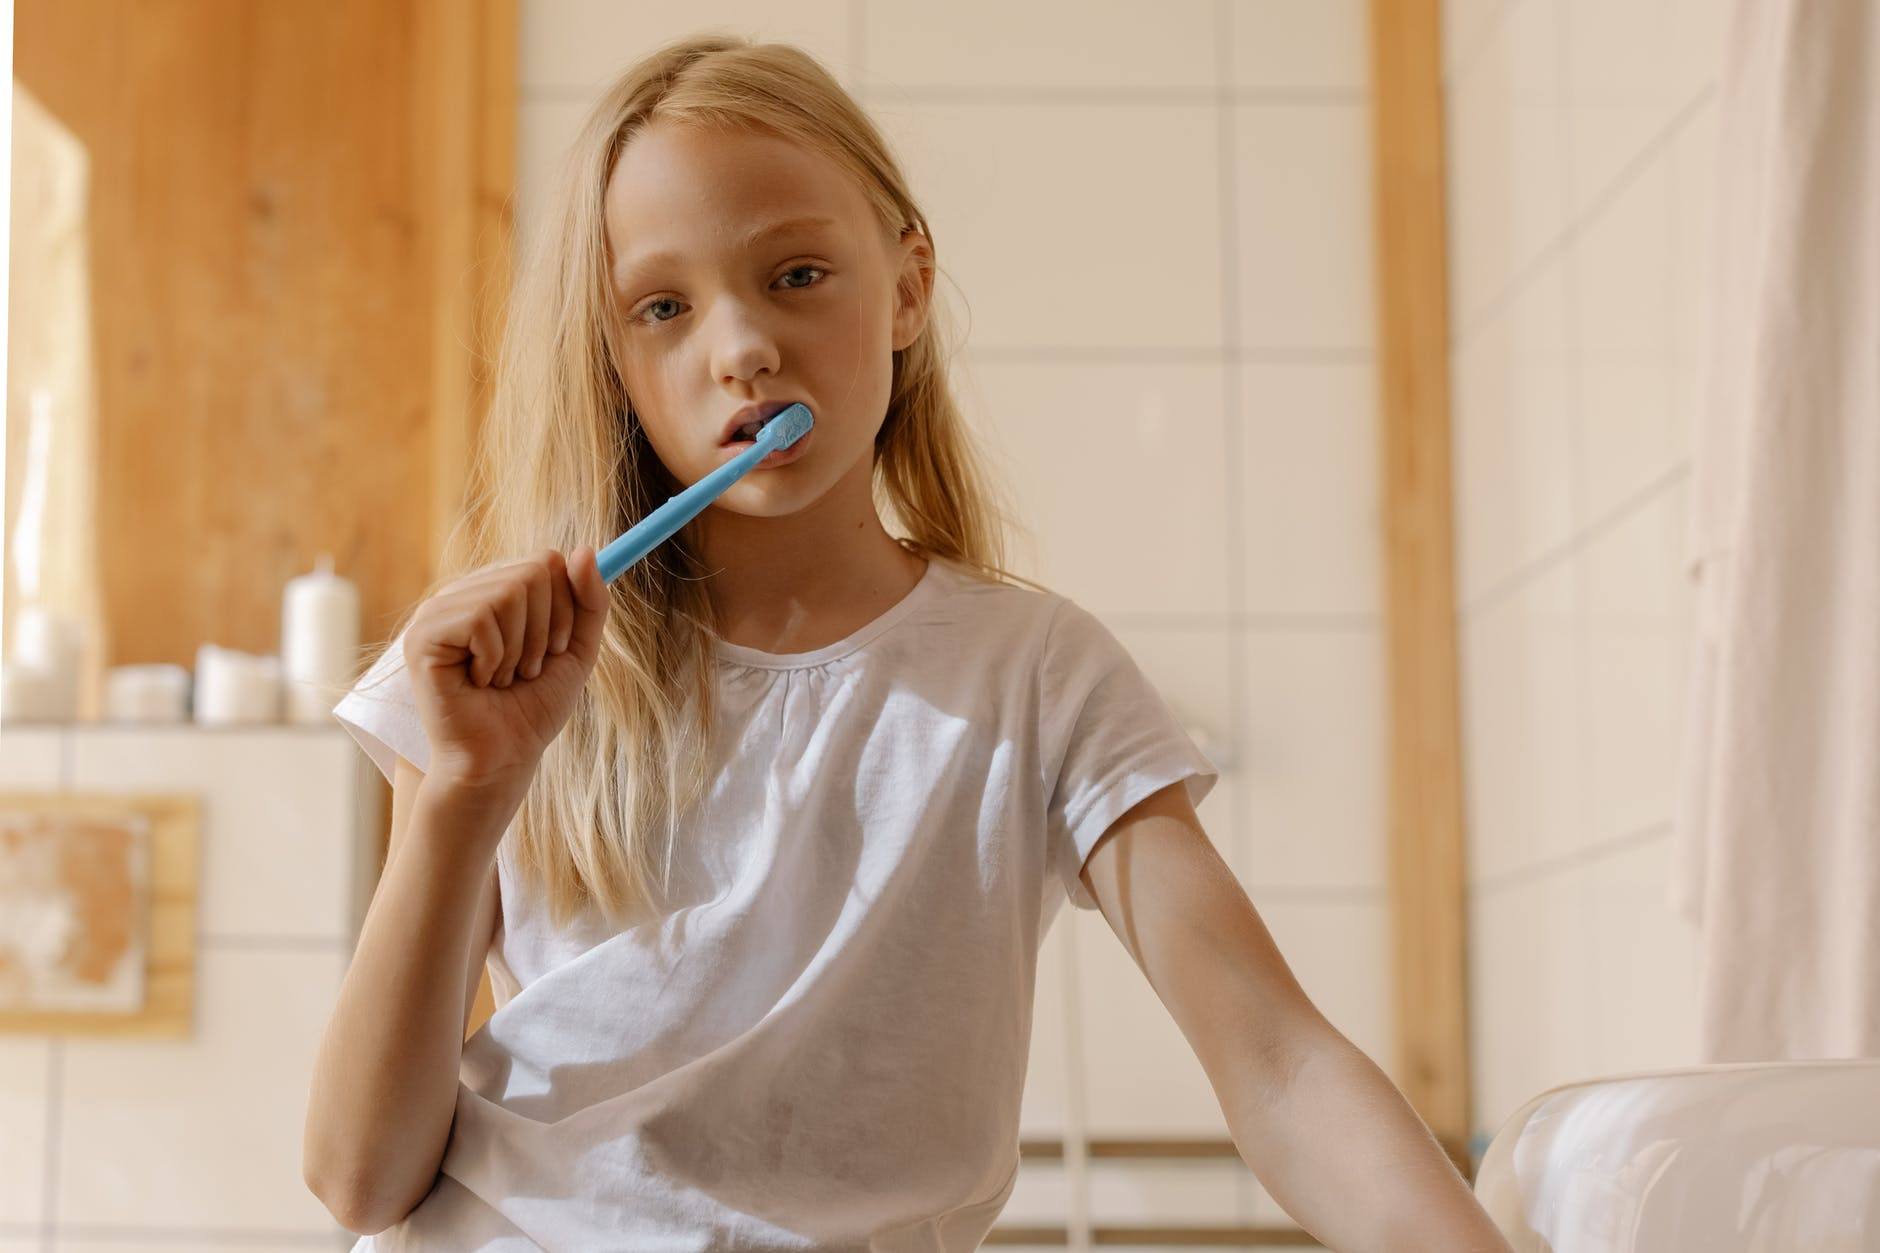 Inilah 5 Cara Menggosok Gigi Yang Benar Untuk Anak-Anak